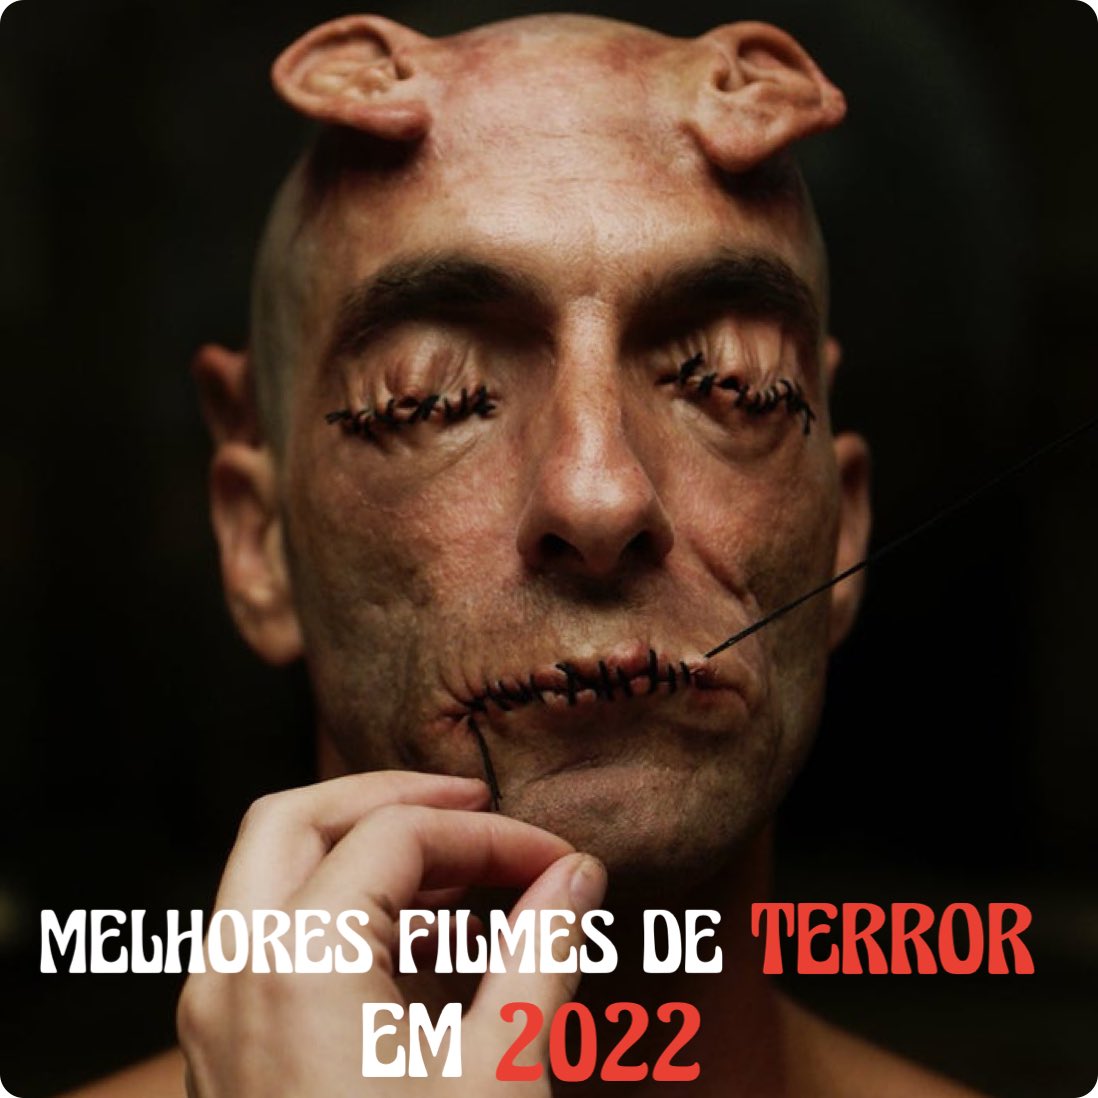 Portal do Medo on X: Lista dos melhores FILMES de TERROR de 2022 segundo a  crítica para ver esse nesse fim de ano.  / X